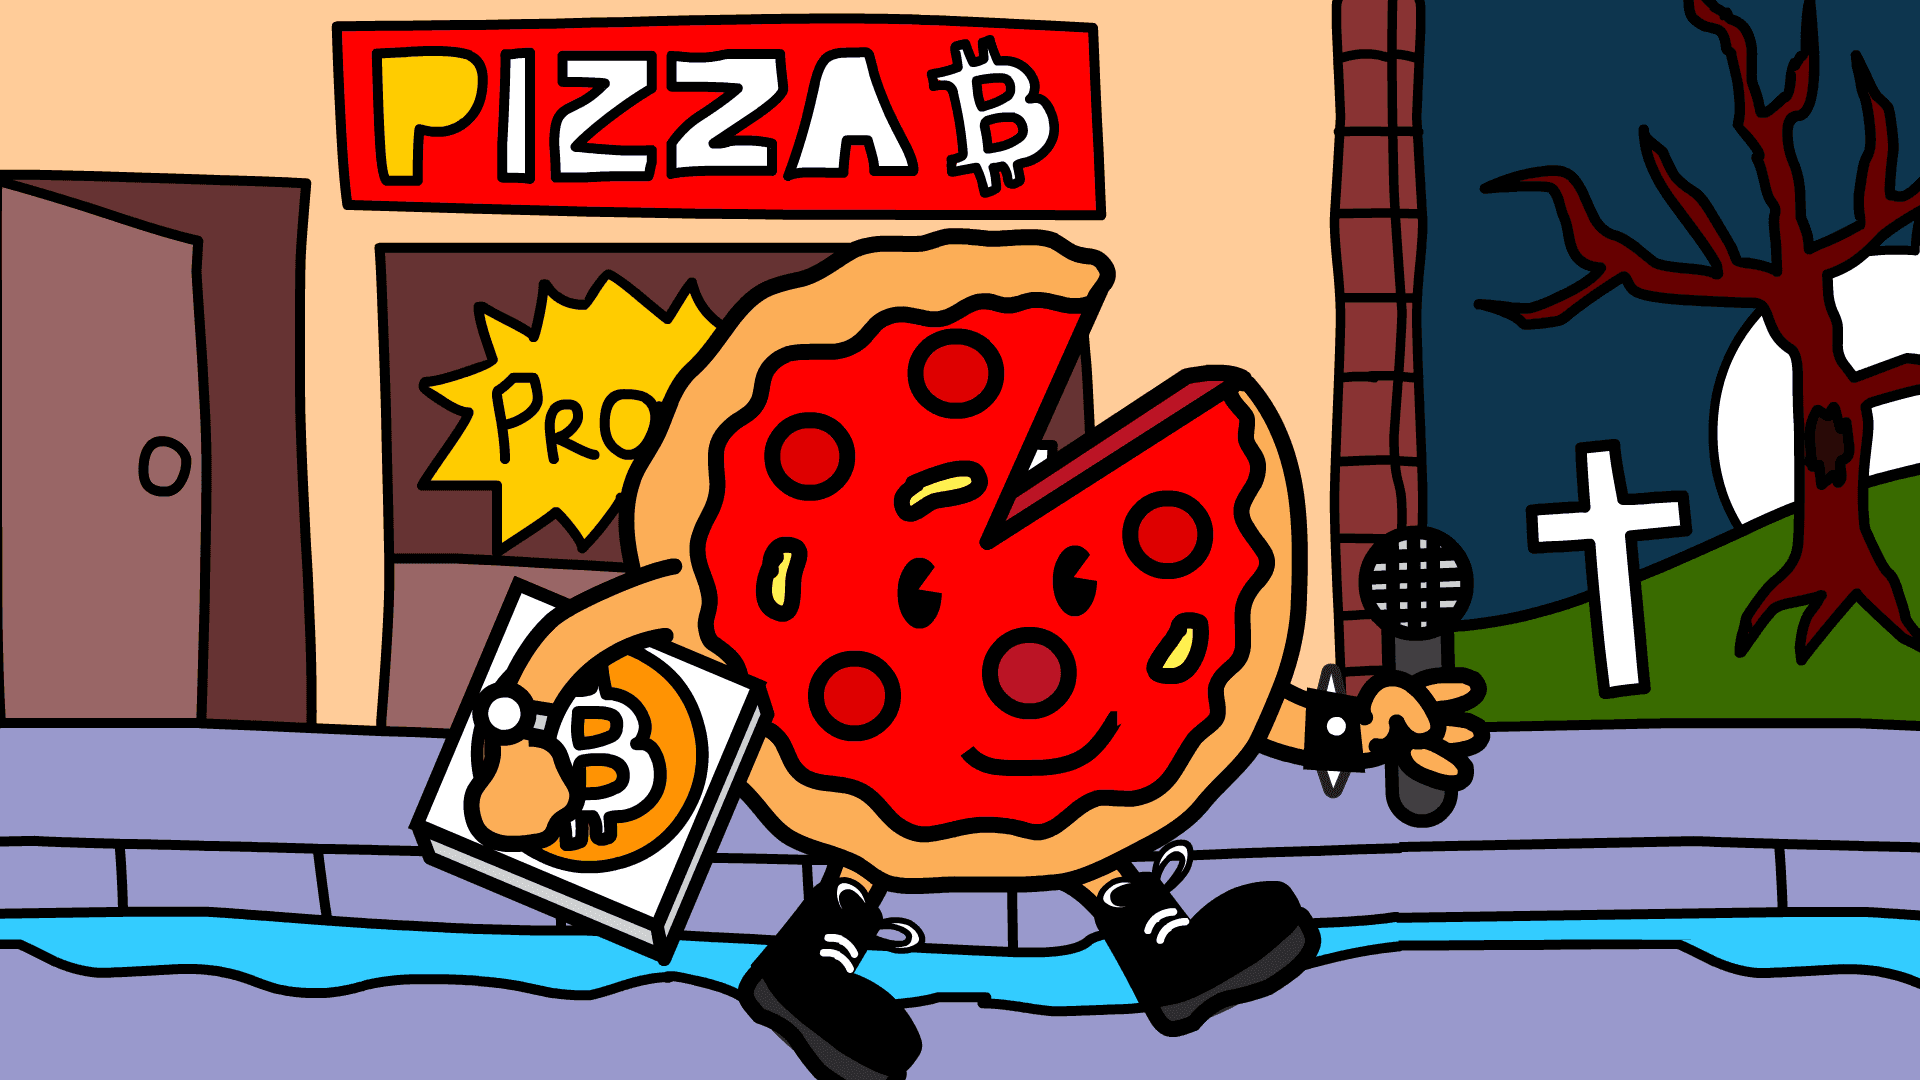 BITCOIN PIZZA - PEPPERONI